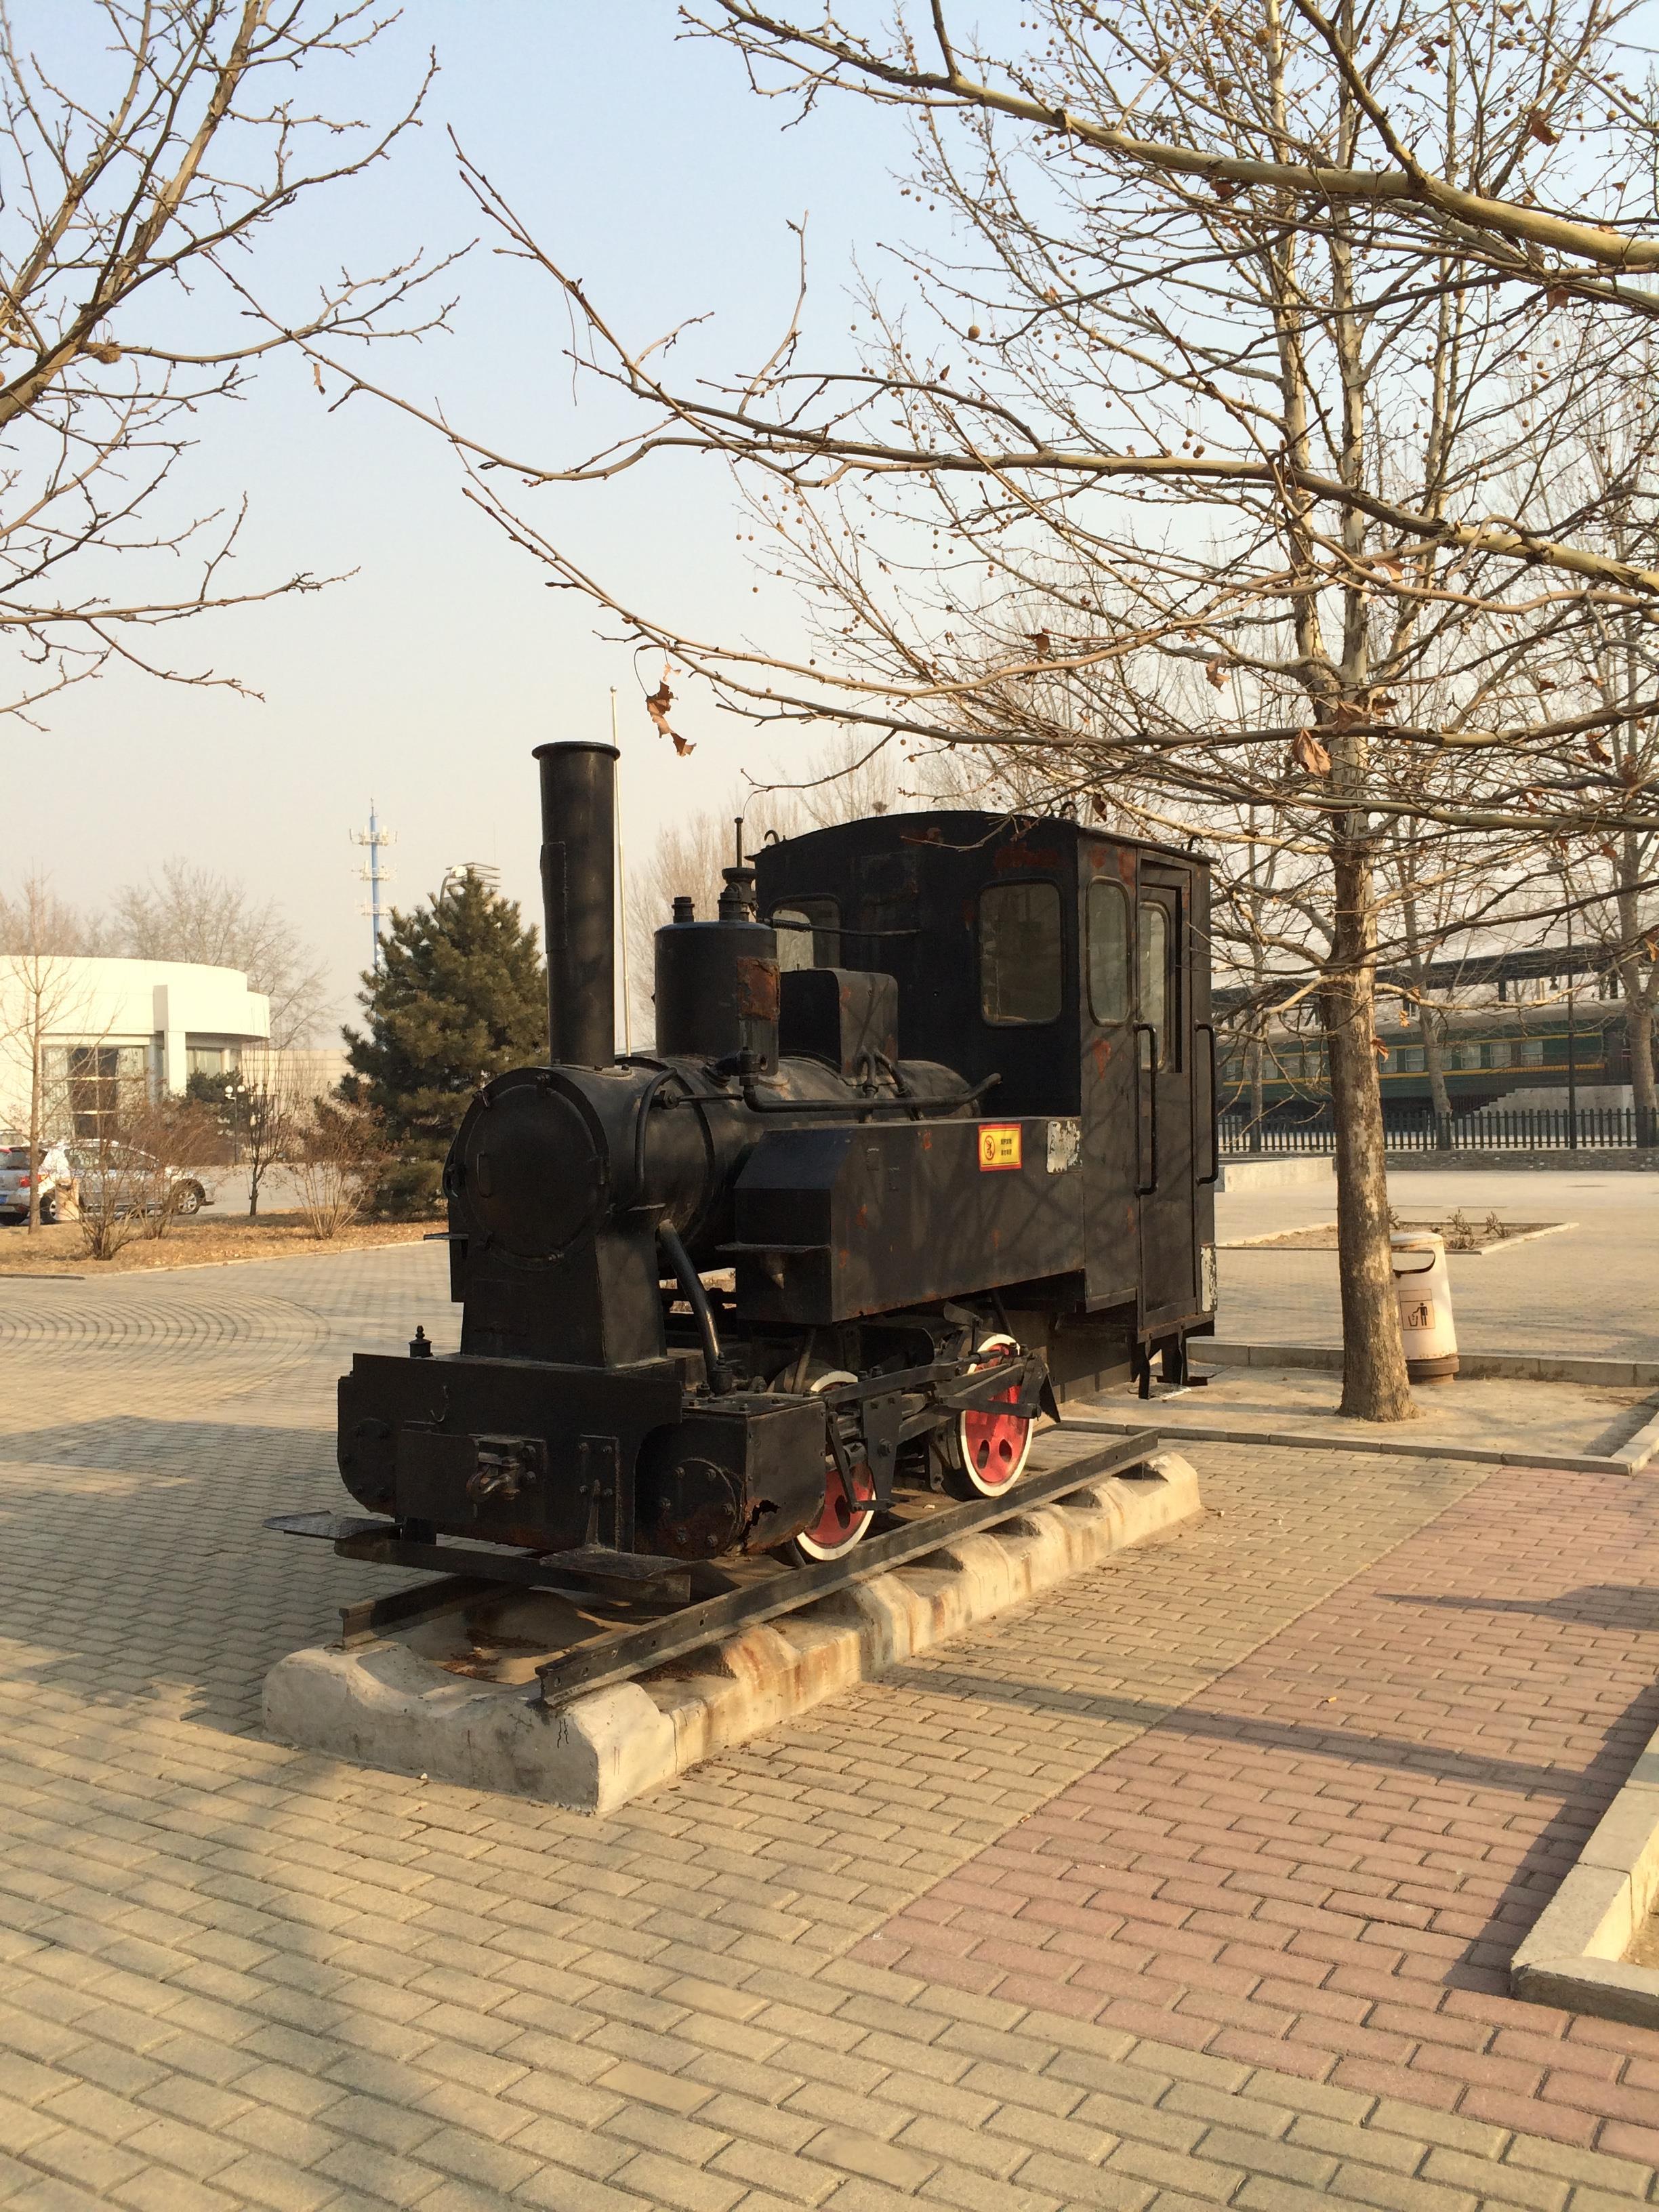 【携程攻略】北京中国铁道博物馆东郊馆景点,靠近电影博物馆,停车位